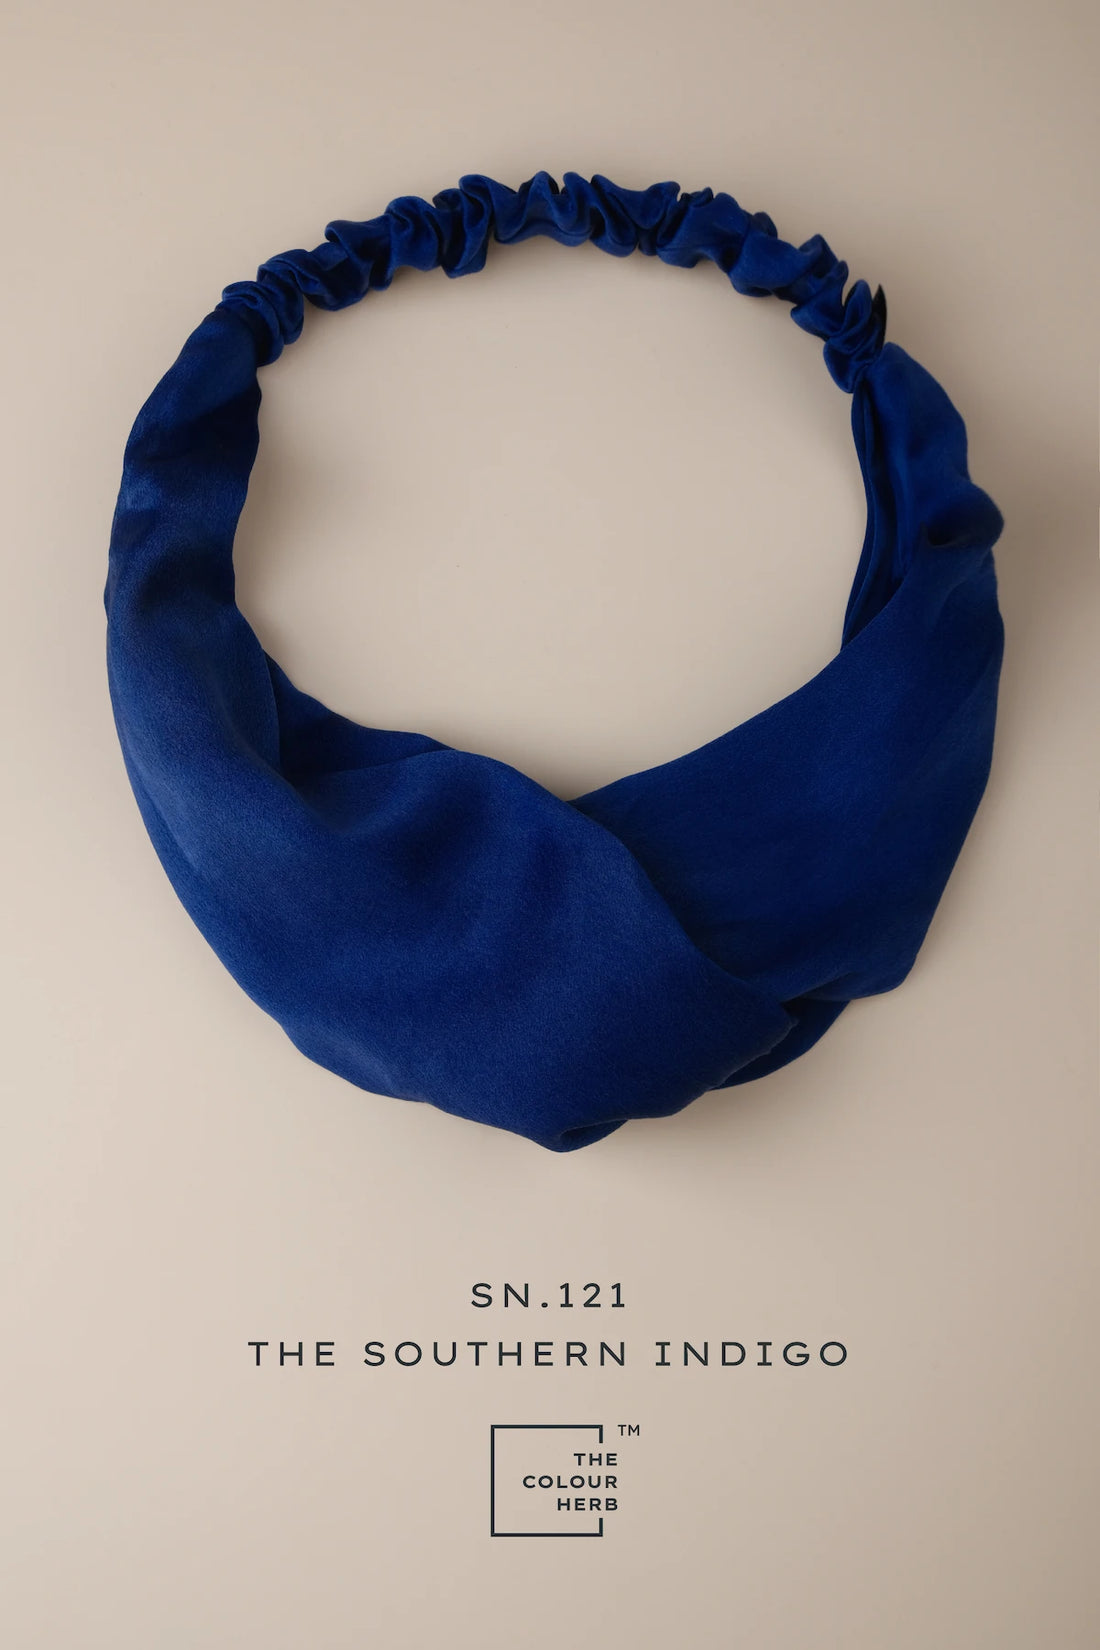 onecolours-headband-hermit-southern-indigo-silk-charmeuse-sn121